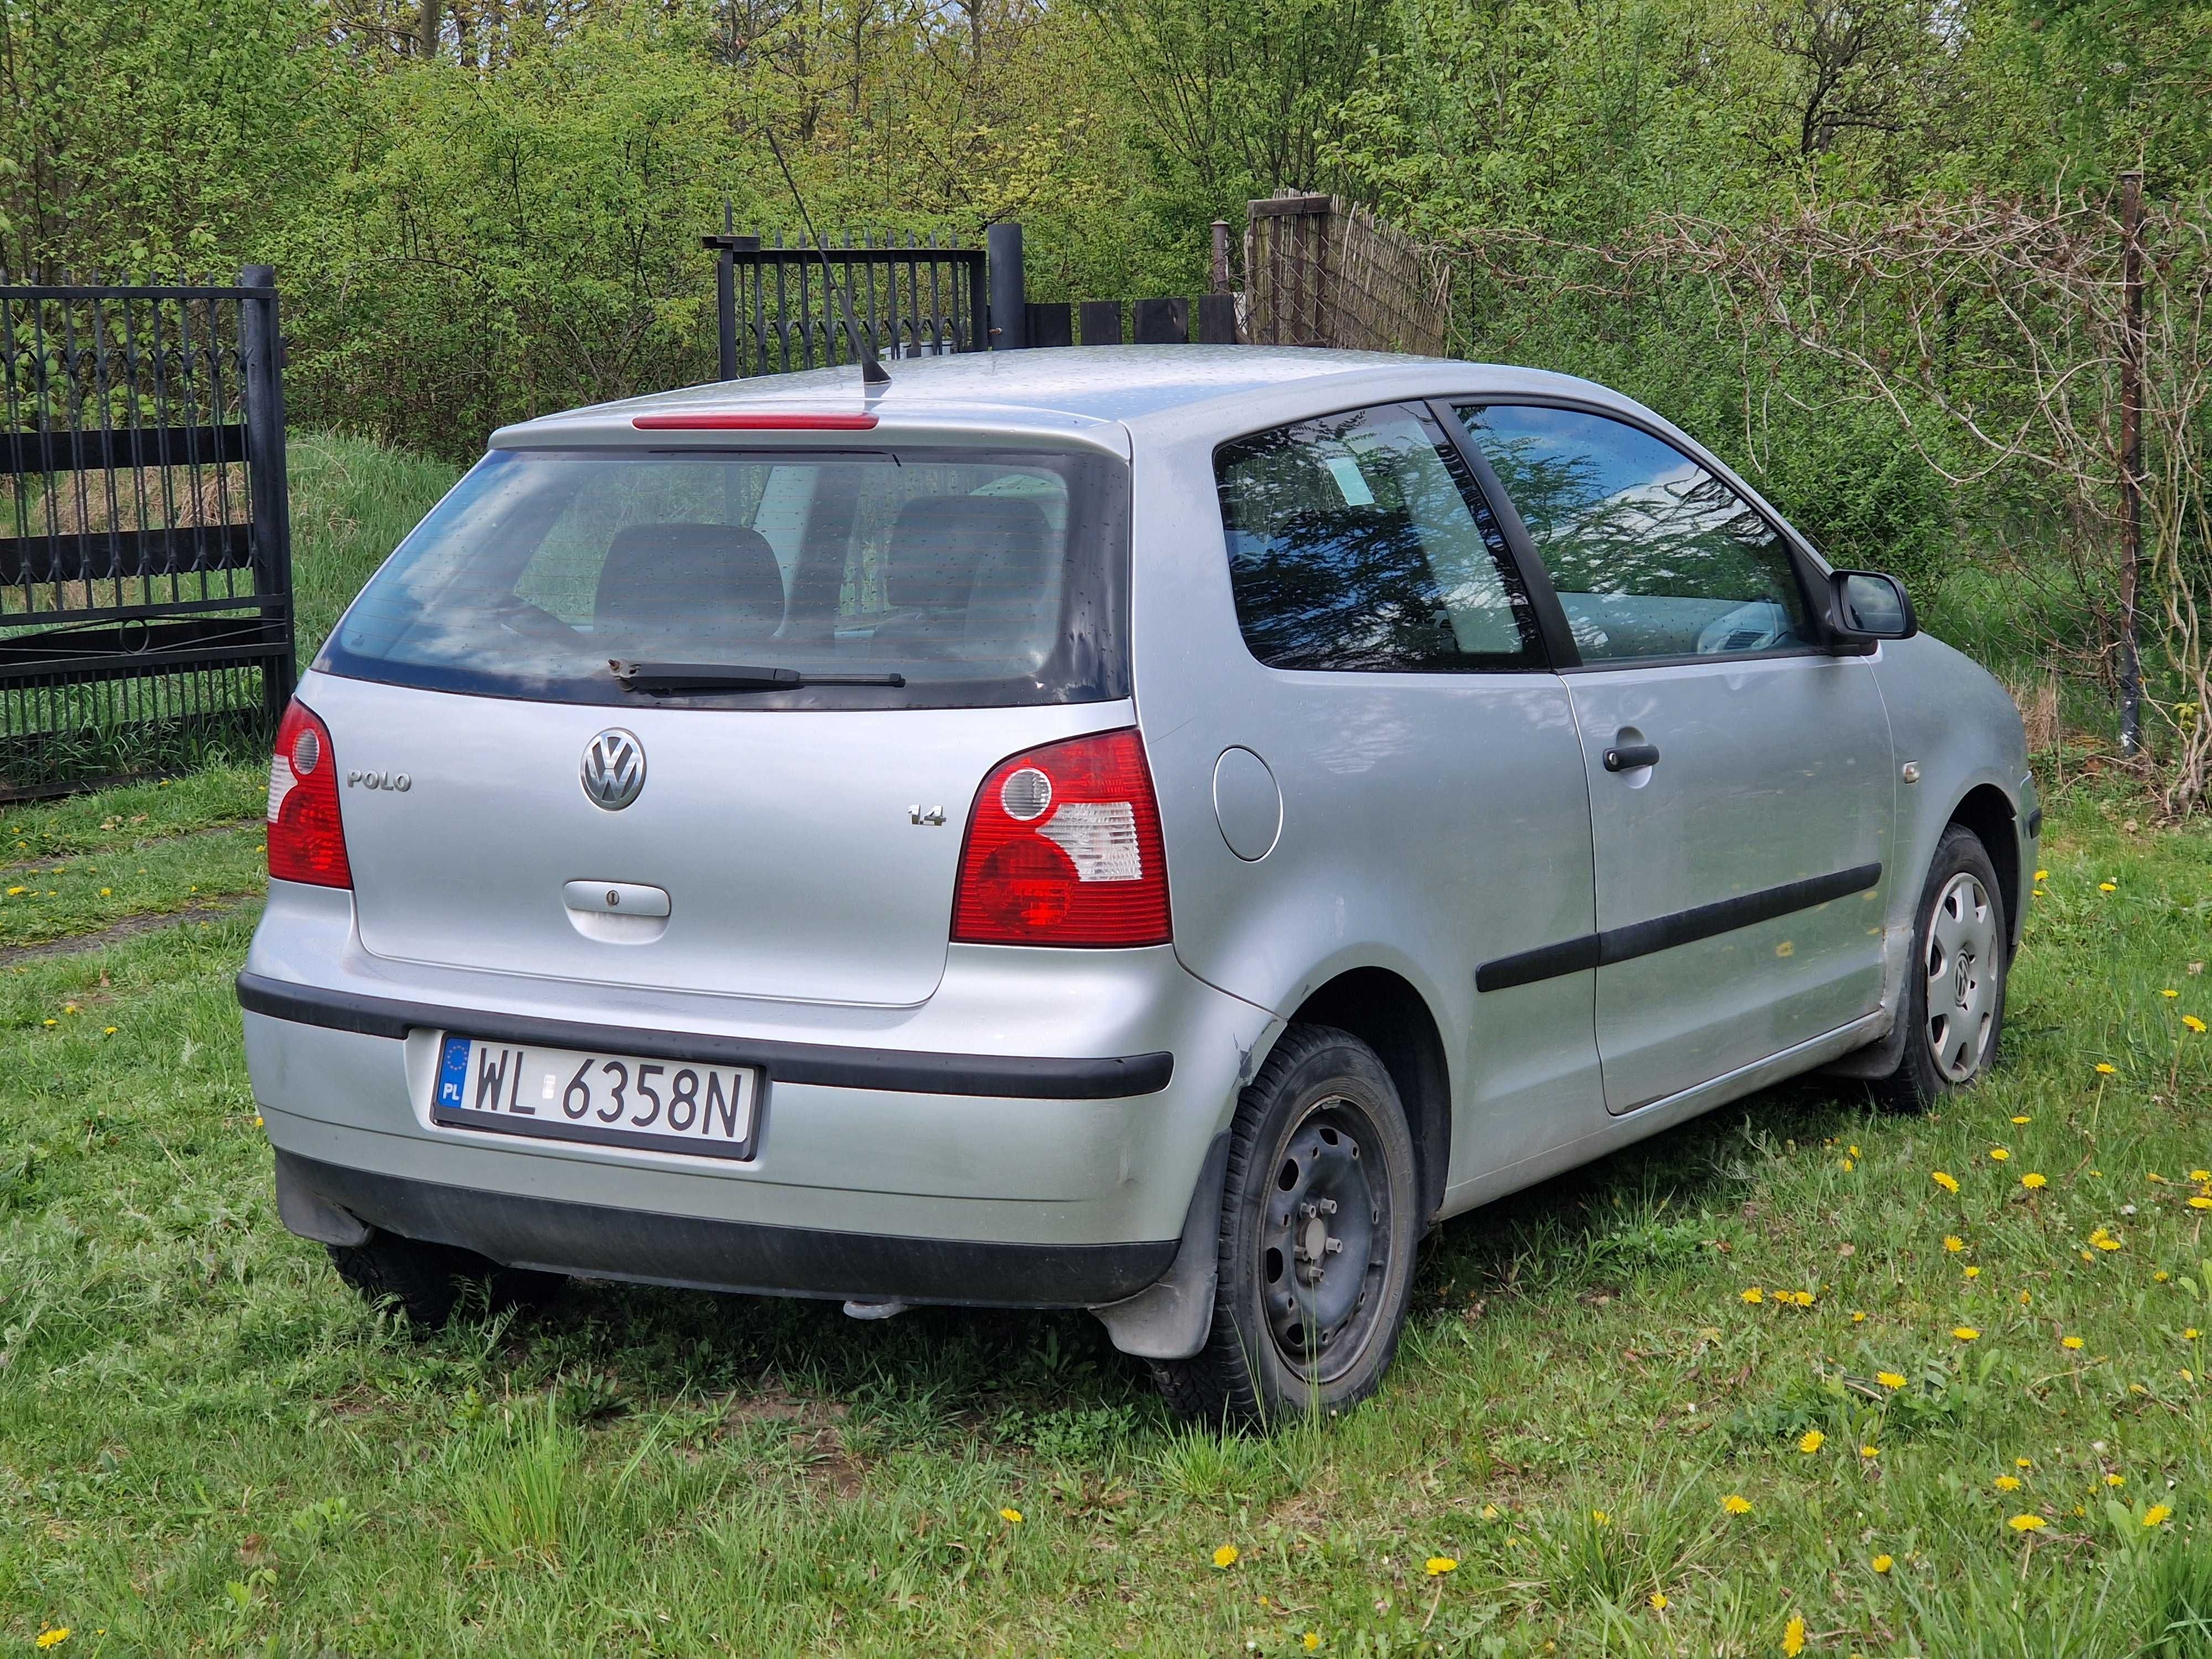 Volkswagen Polo 1.4 FSI, bardzo dobry stan mechaniczny, niski przebieg